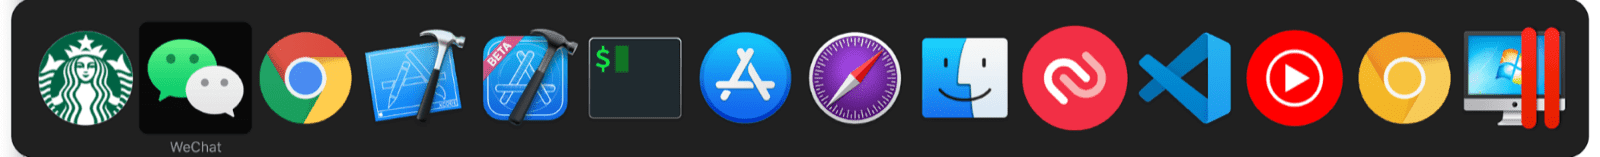 Der macOS-Multitasker-Wechsler enthält neben der regulären macOS-App Mini-Apps.